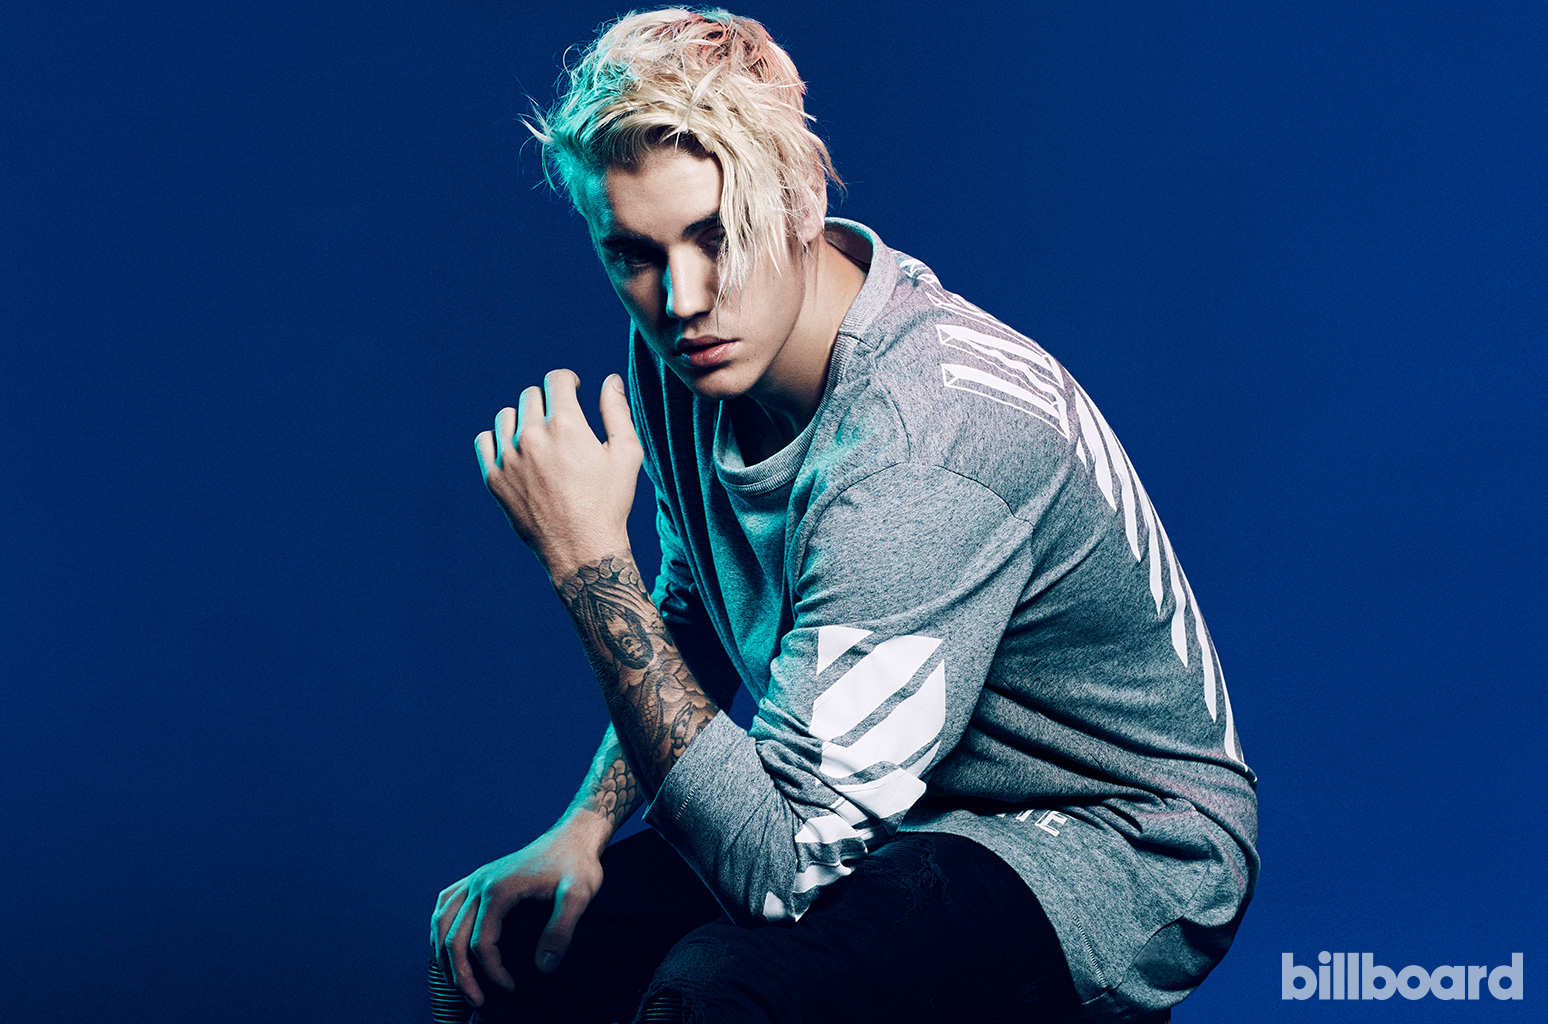 Justin-Bieber-2015-bb35-billboard-1548.jpg